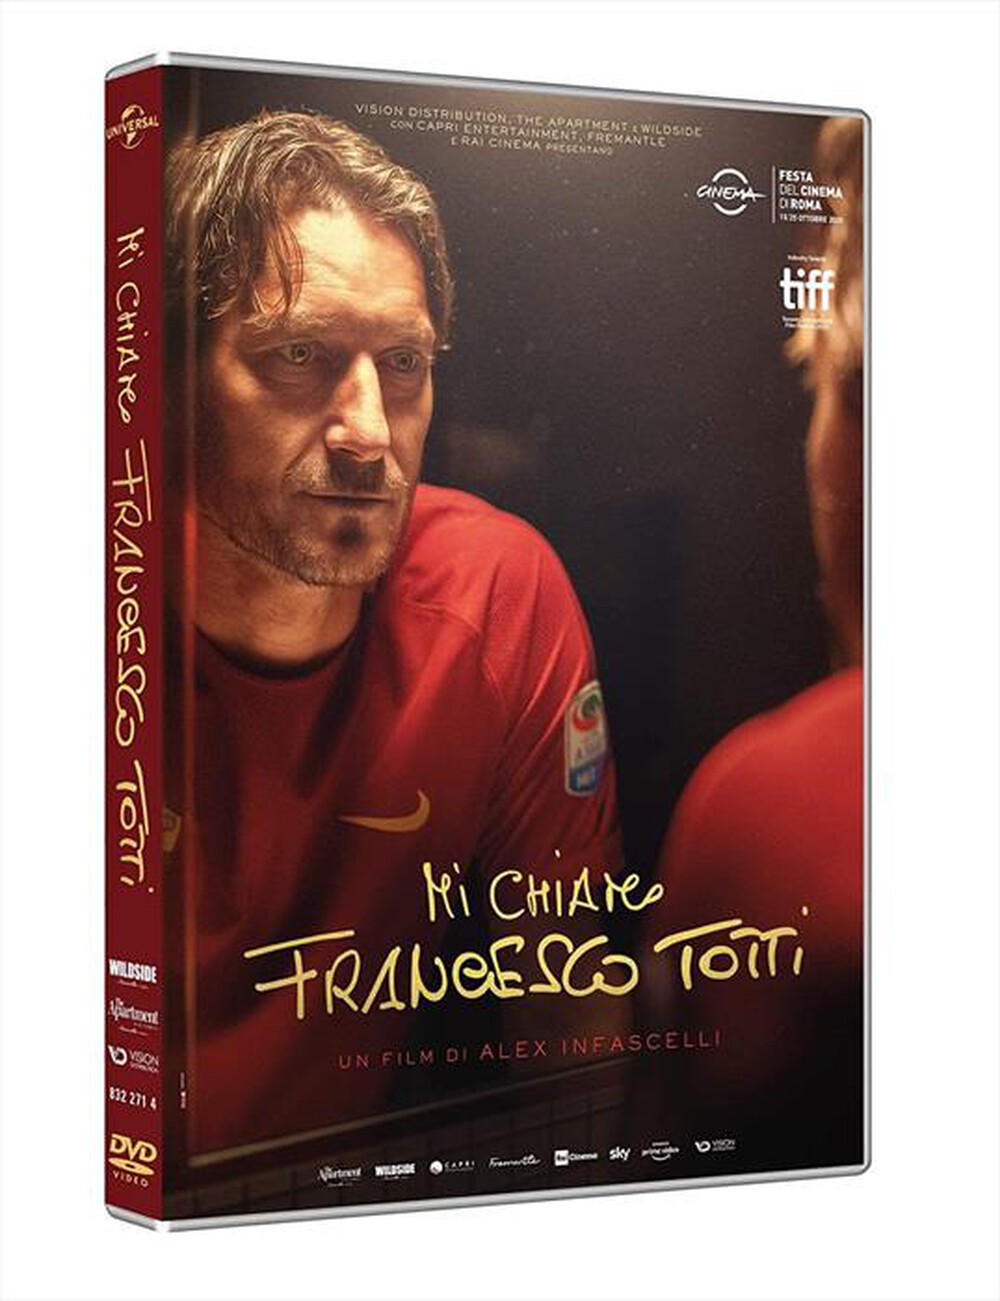 "UNIVERSAL PICTURES - Mi Chiamo Francesco Totti"